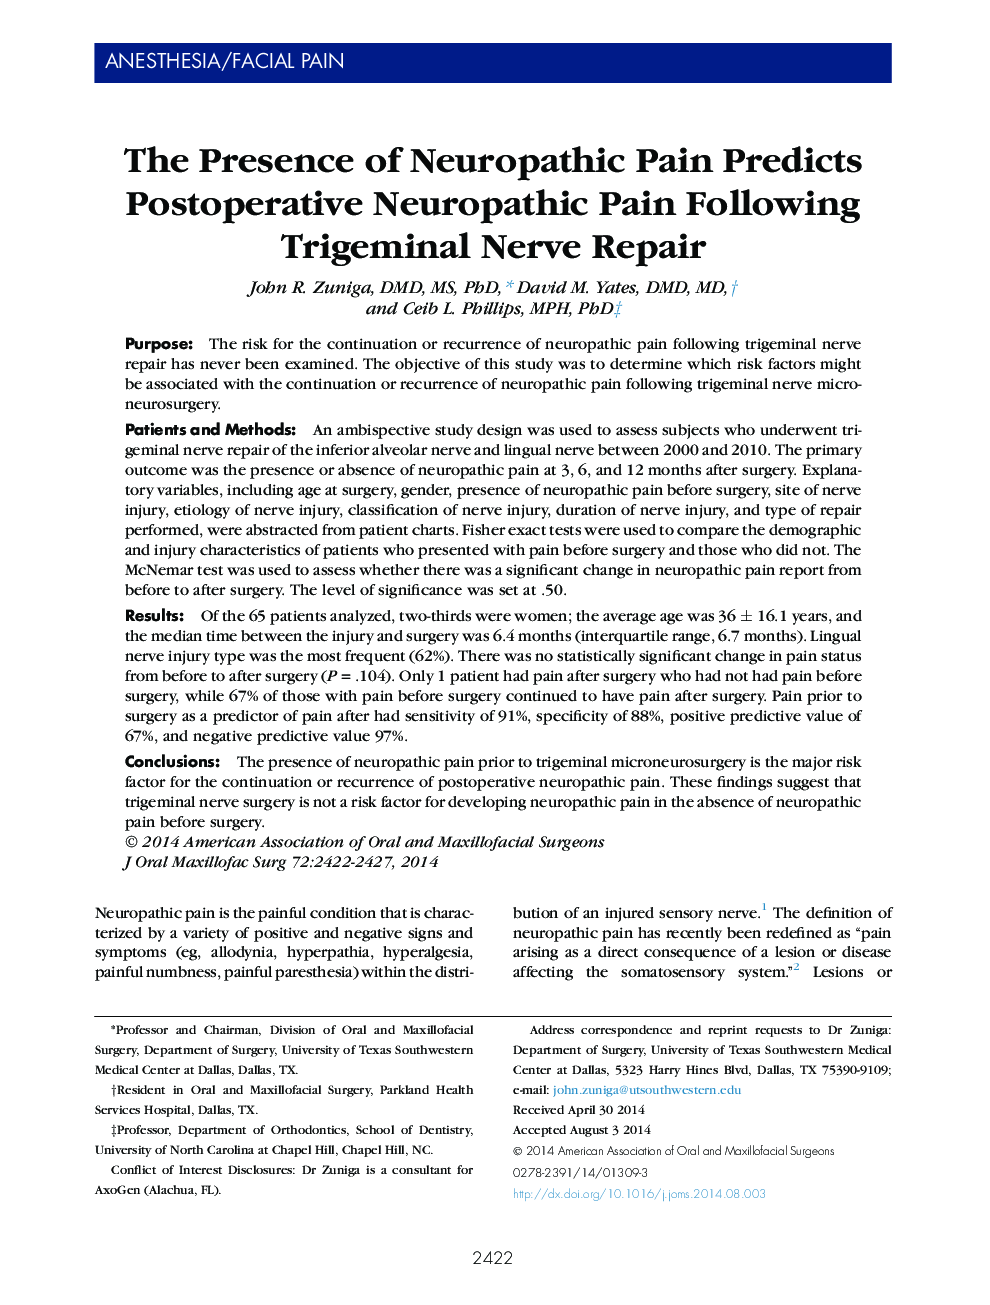 وجود درد نوروپاتیک پیش بینی درد بعد از عمل جراحی نوروپاتیک پس از اصلاح نعوظ 